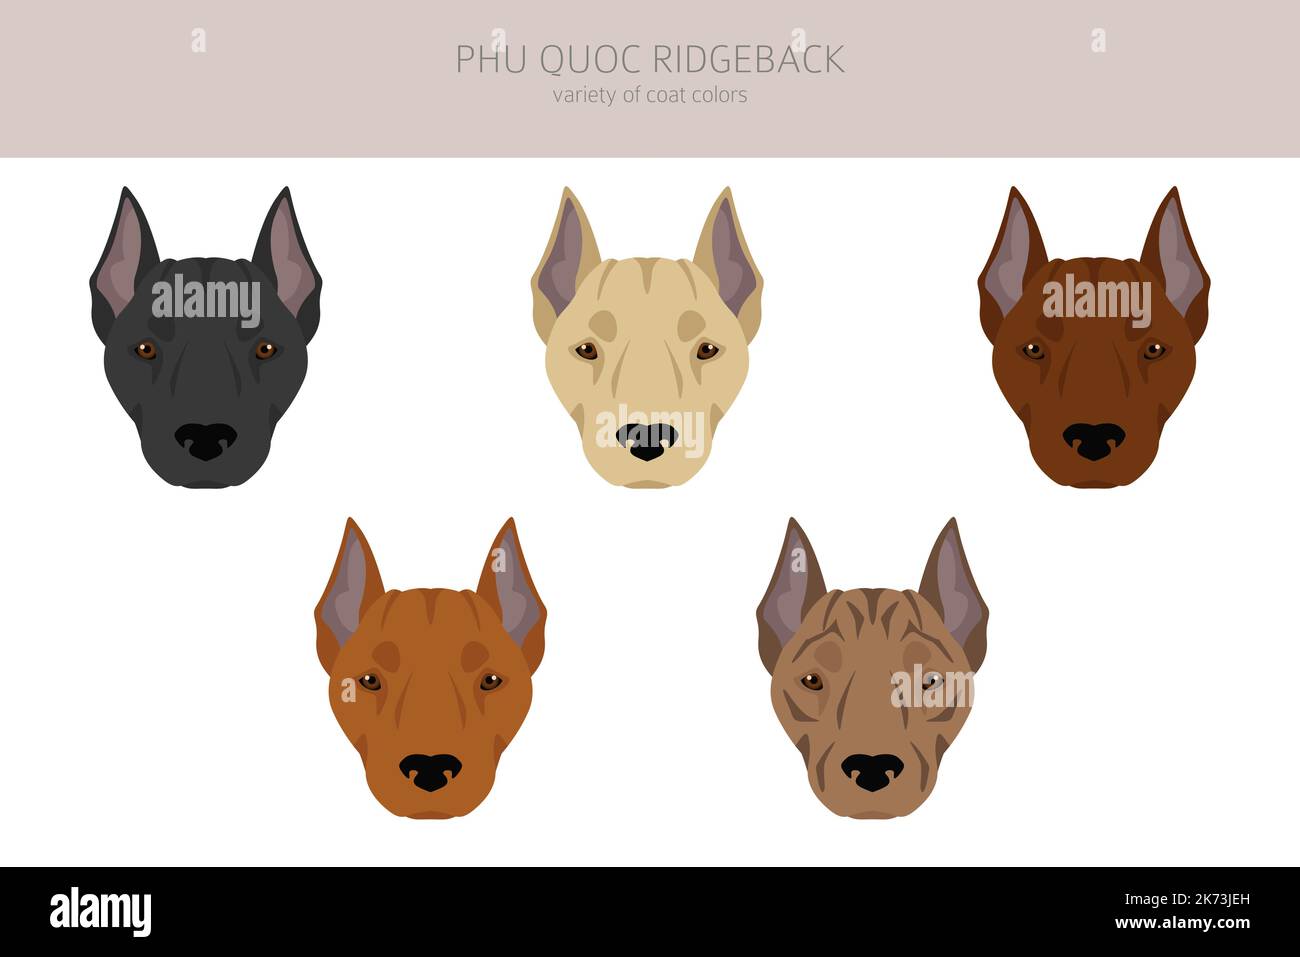 Phu Quoc Ridgeback clipart. Ensemble de couleurs de manteau. Infographie sur les caractéristiques de toutes les races de chiens. Illustration vectorielle Illustration de Vecteur